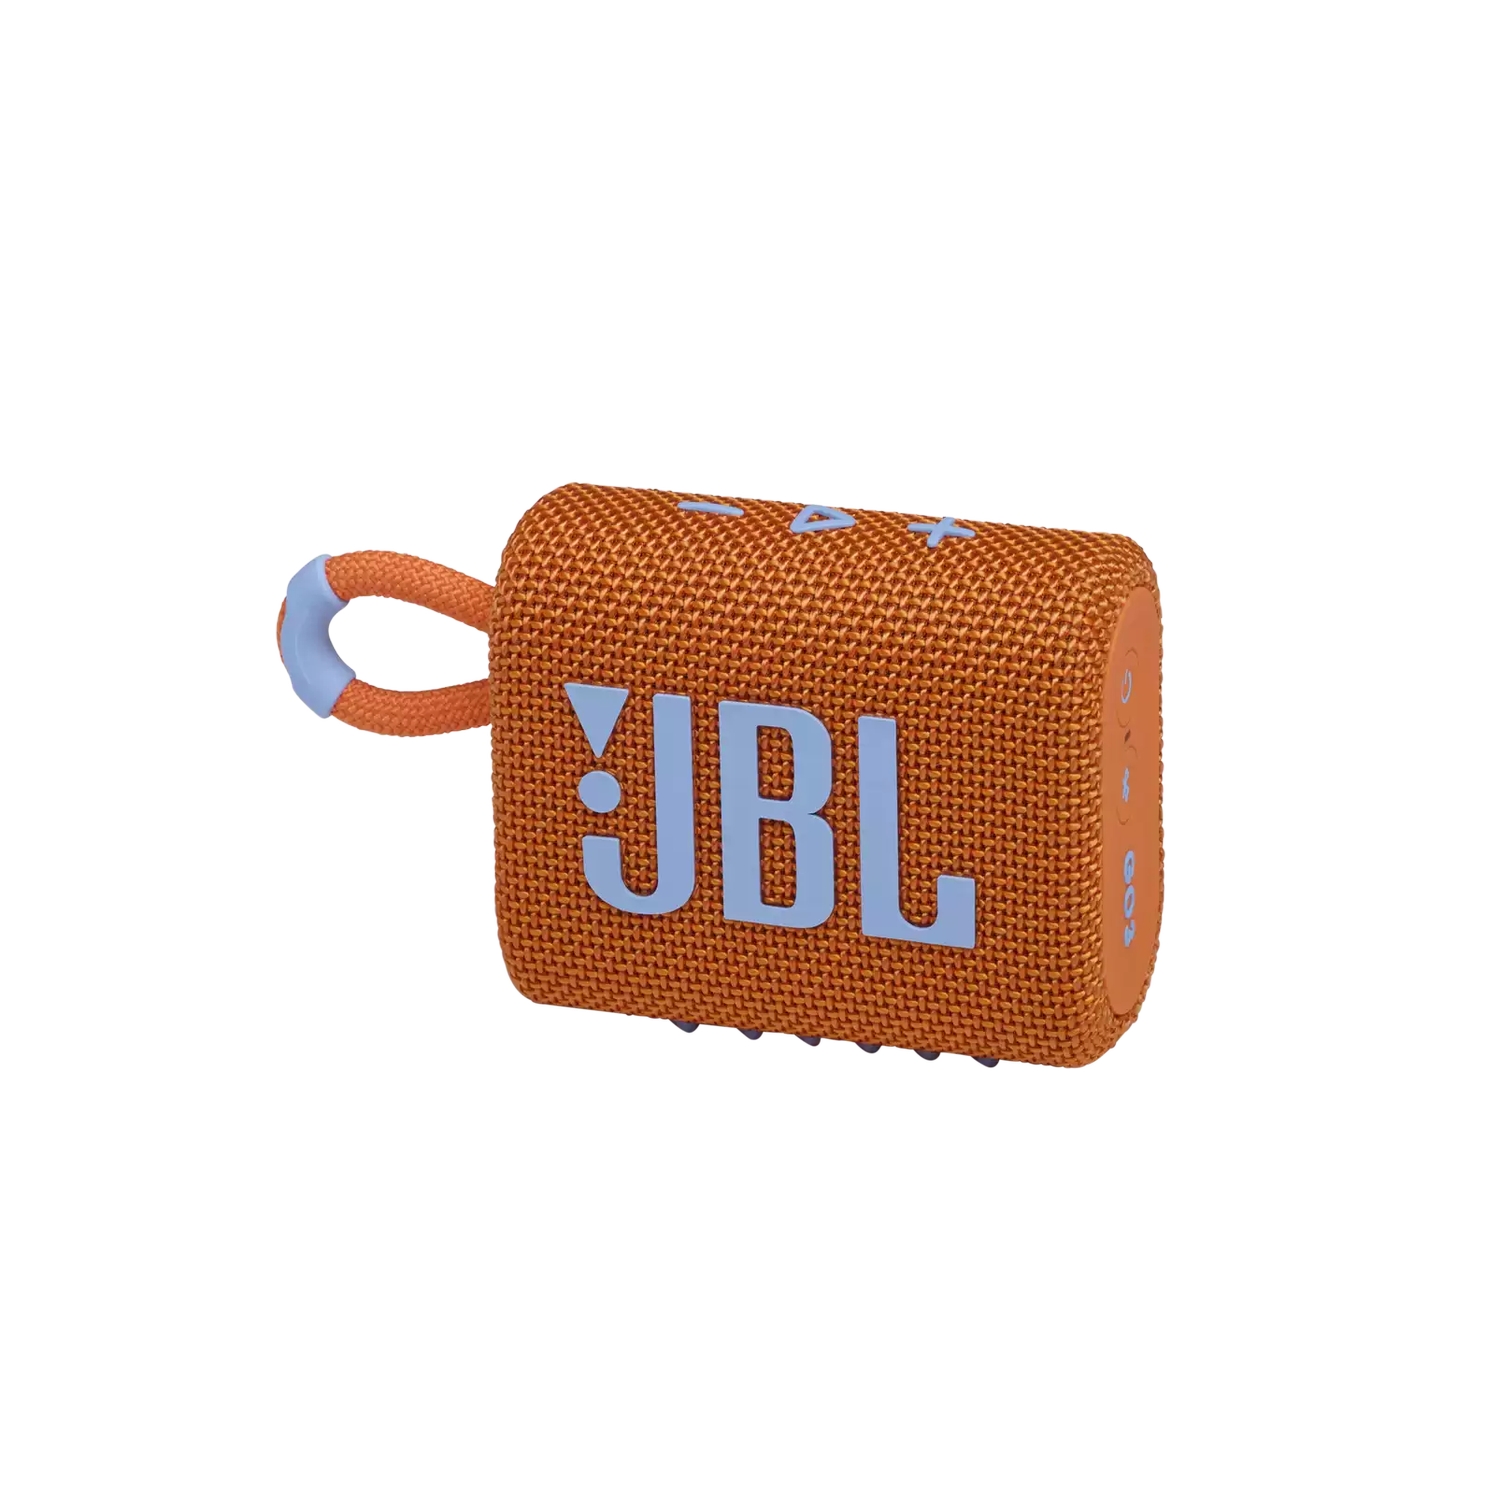 Портативная акустика JBL GO 3 оранжевая портативная акустика jbl go 2 оранжевый